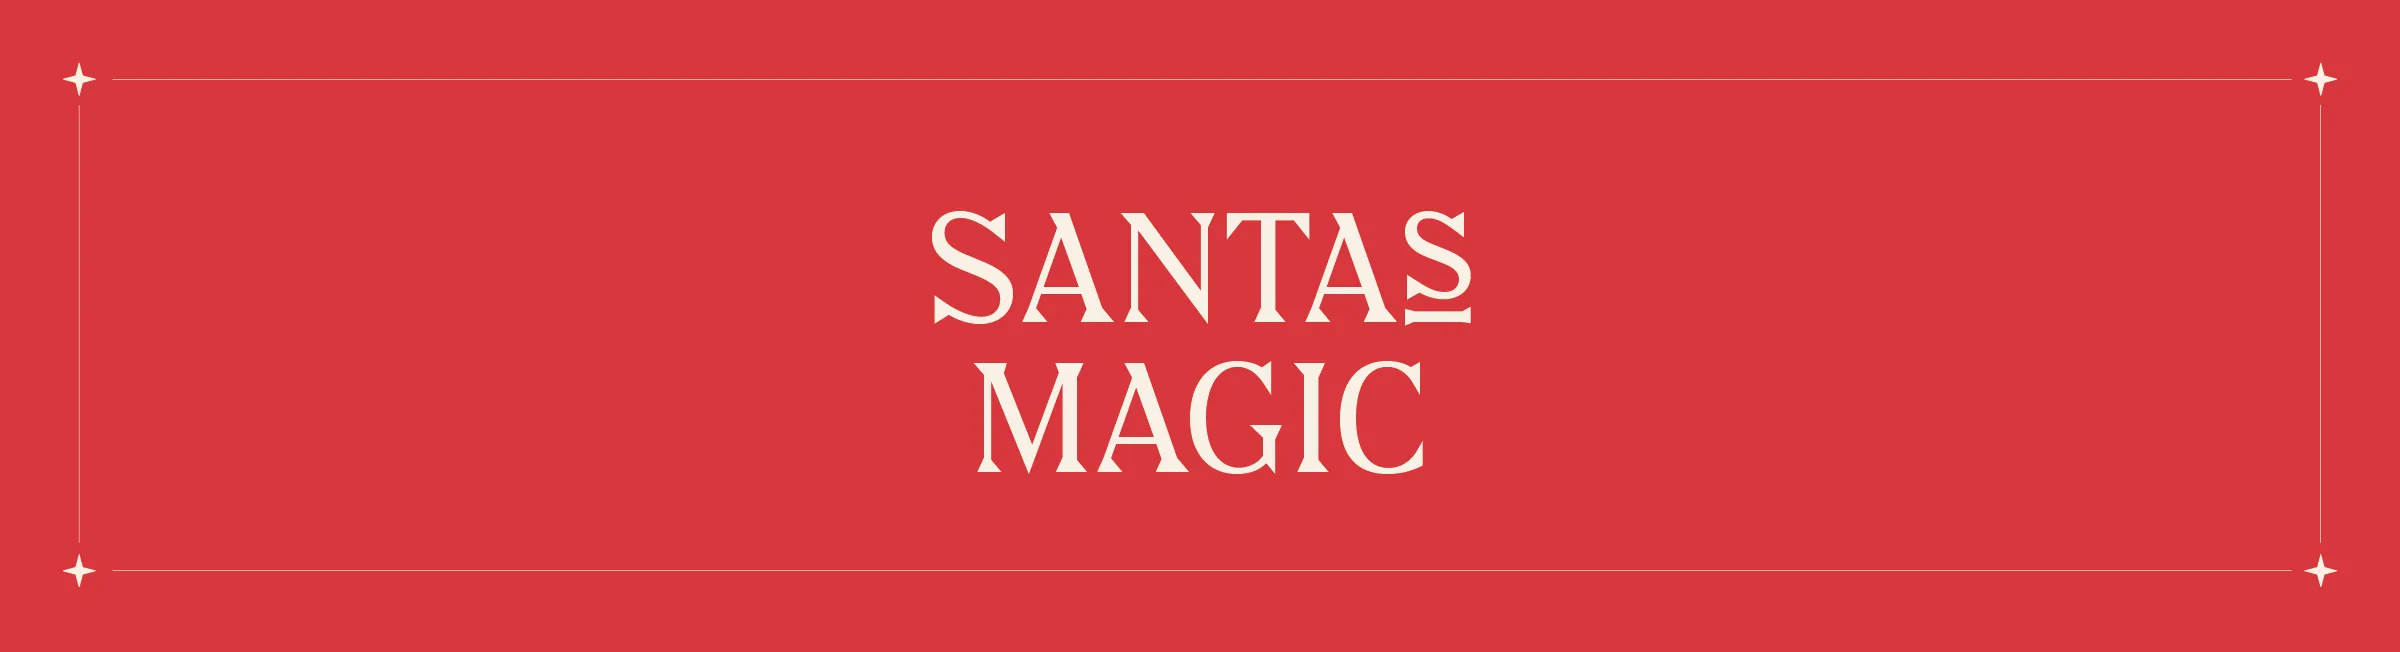 Santas Magic